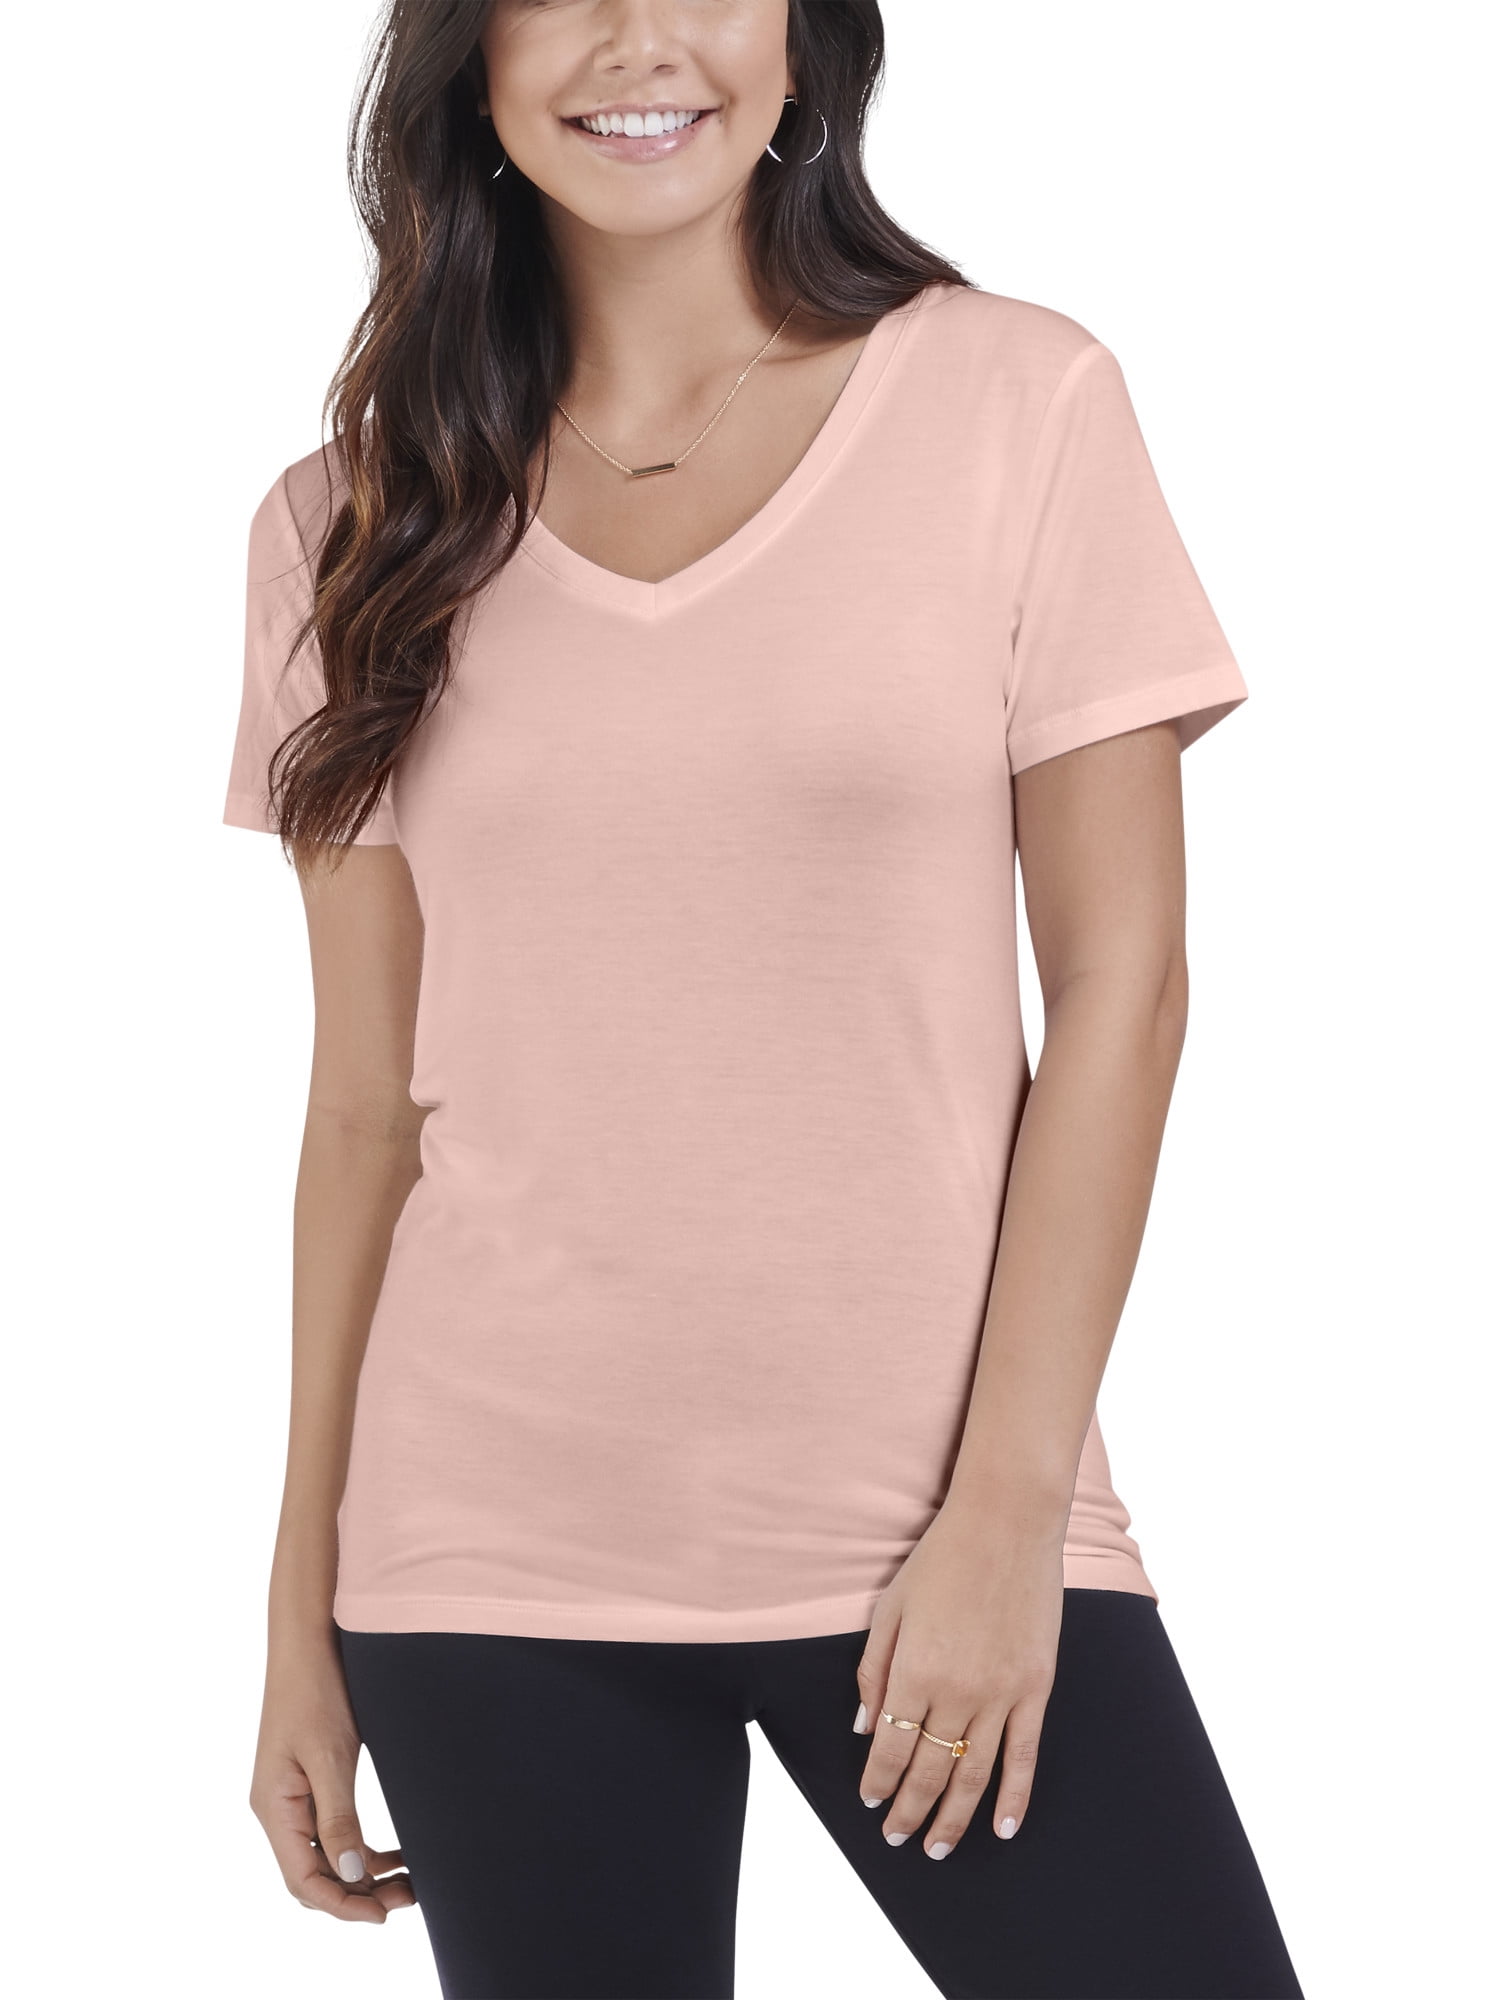 Seek No Further Women's Short Sleeve V-Neck T-Shirt - Walmart.com